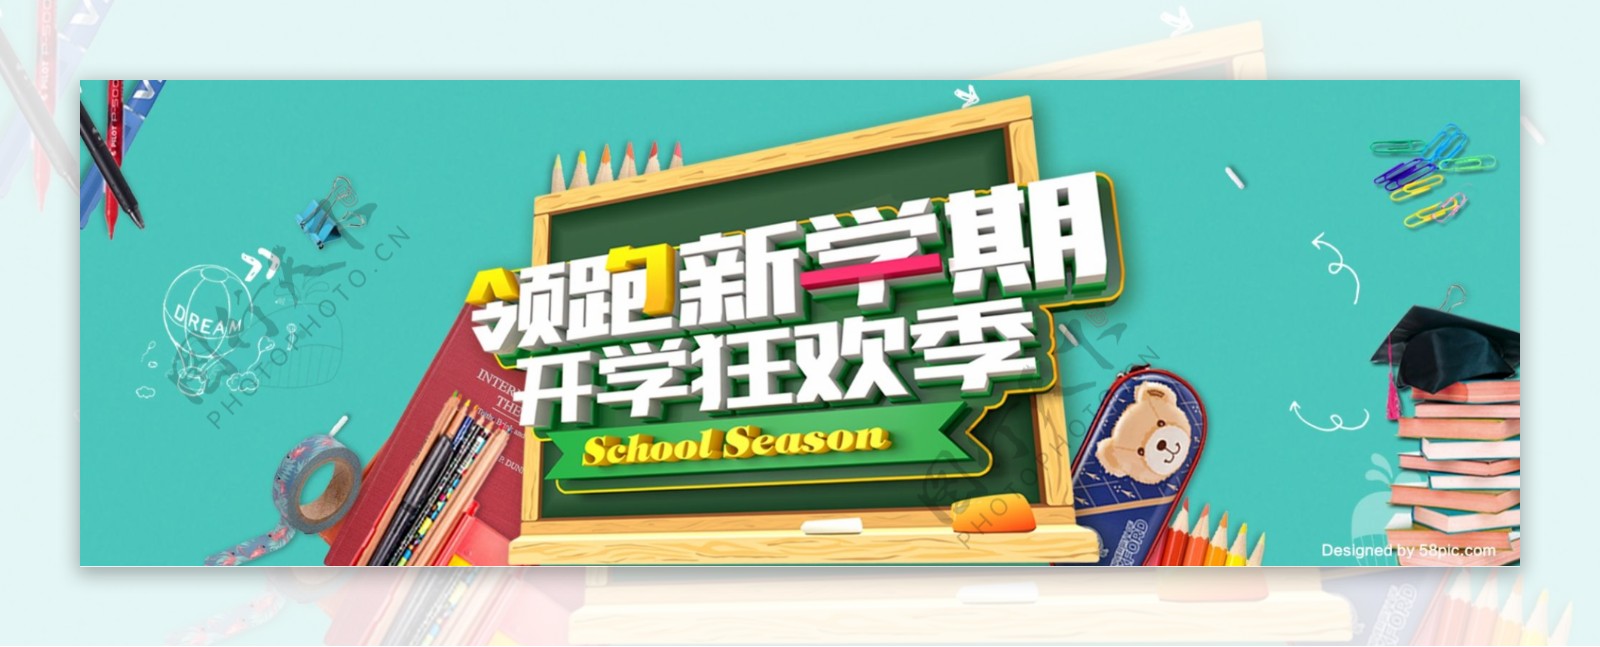 电商淘宝天猫开学季新学期活动促销海报banner模板字体设计